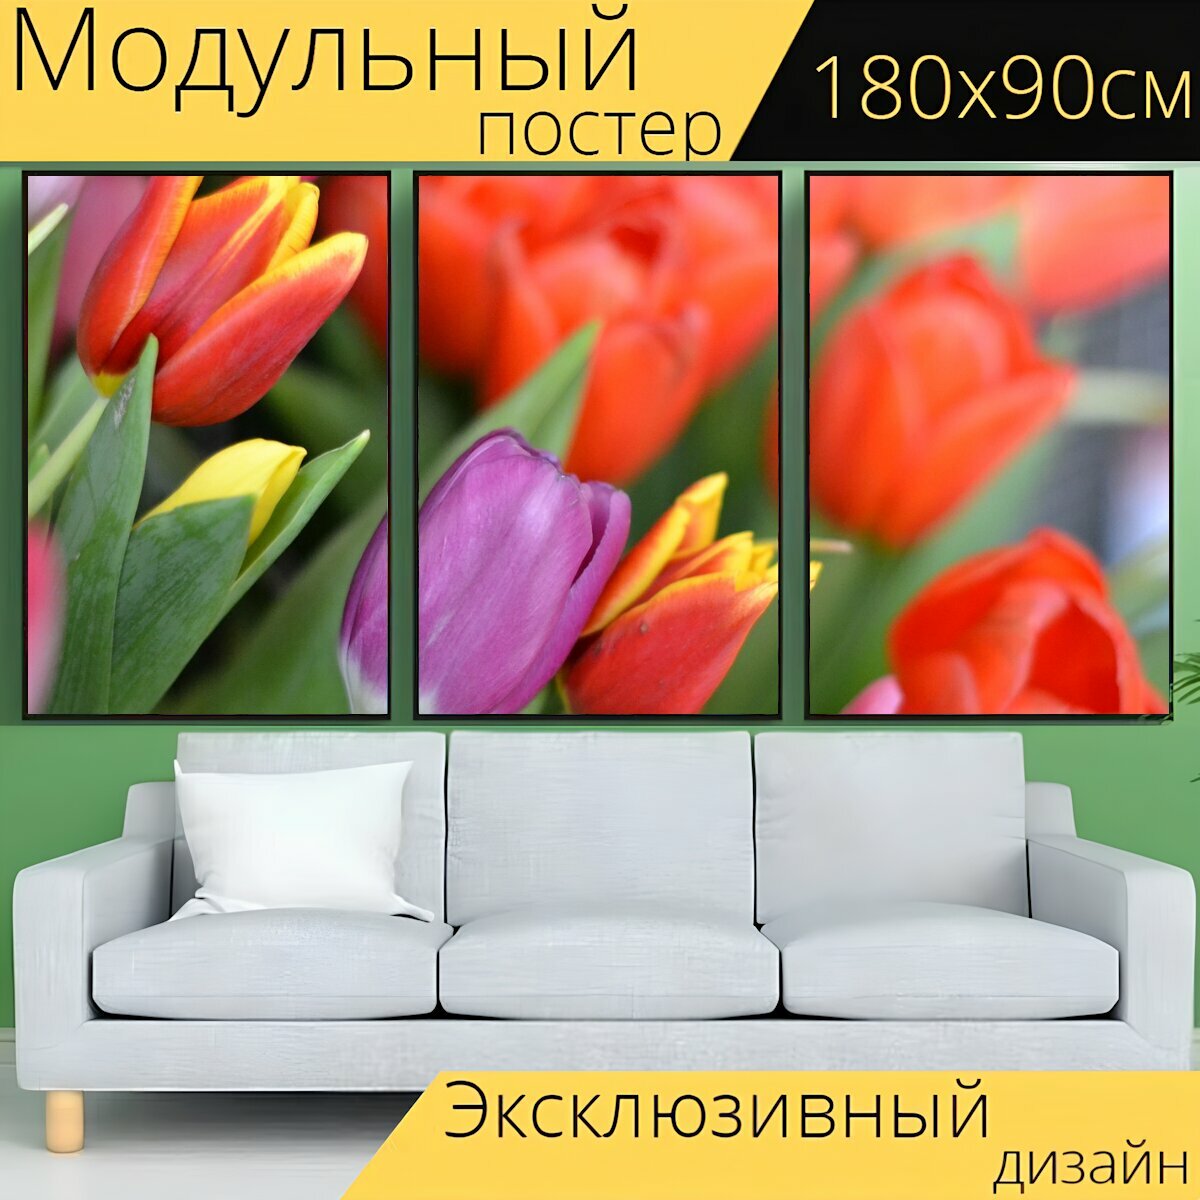 Модульный постер "Тюльпаны, цветы, весна" 180 x 90 см. для интерьера